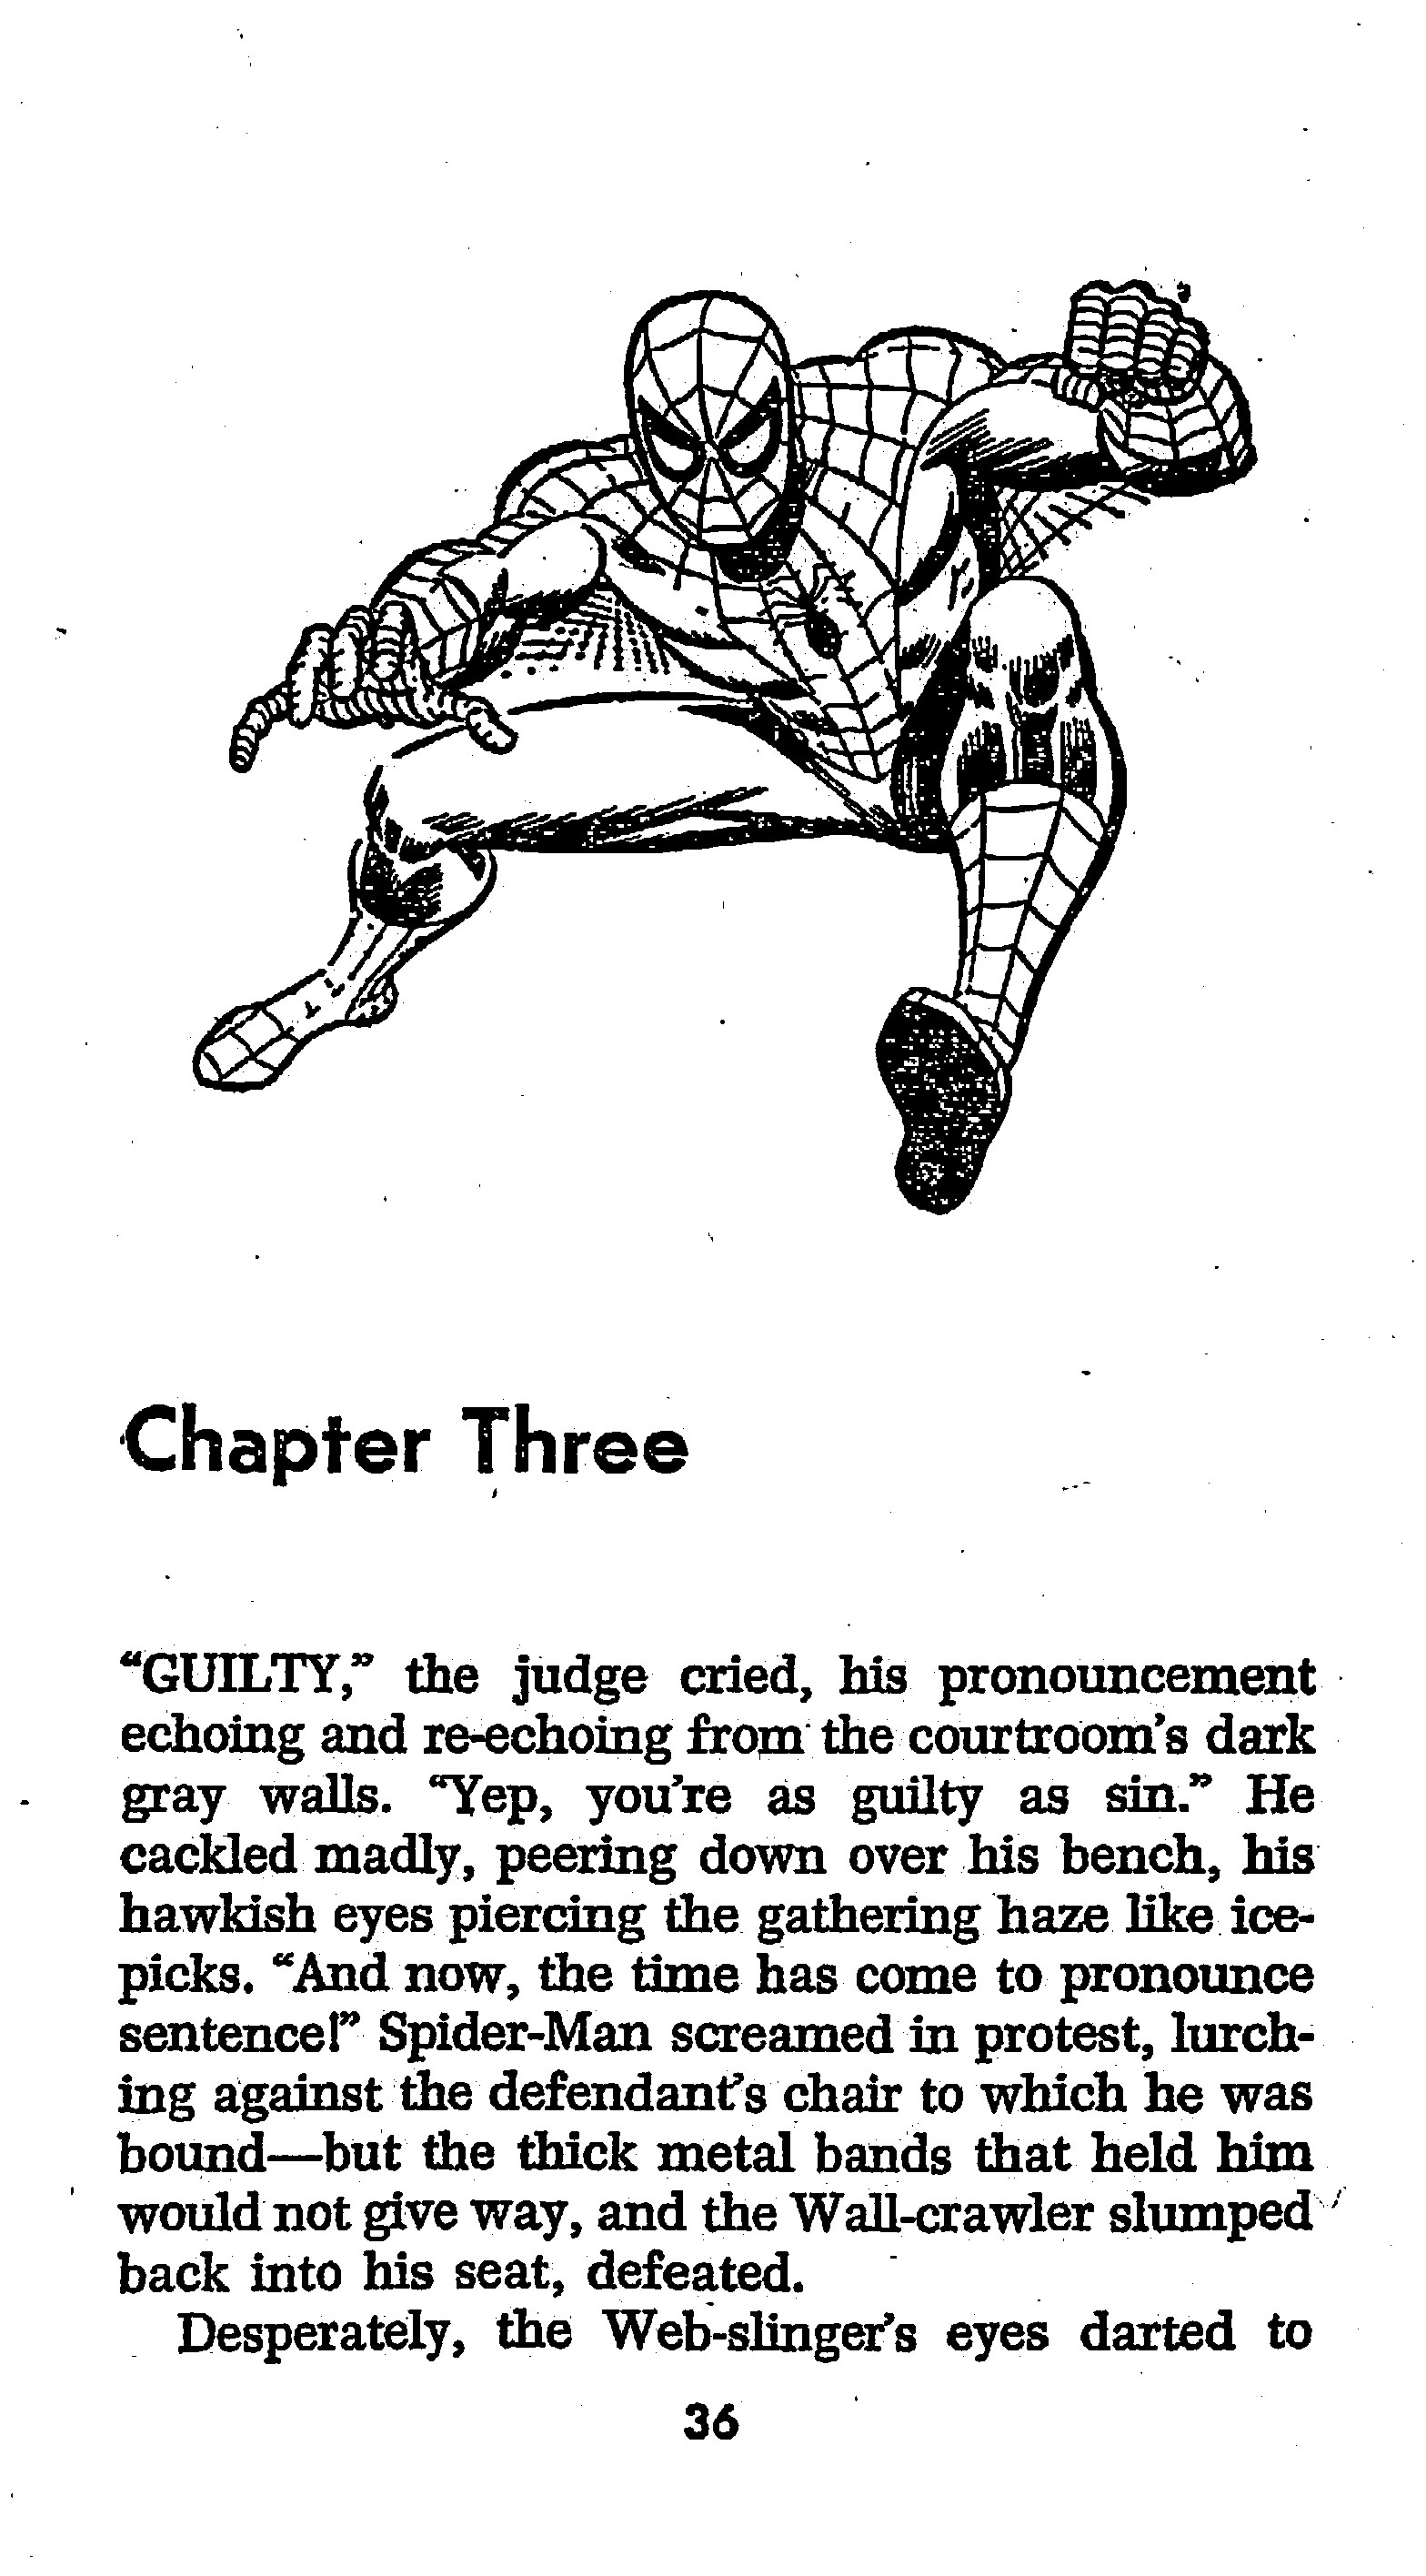 Read online The Amazing Spider-Man: Mayhem in Manhattan comic -  Issue # TPB (Part 1) - 37